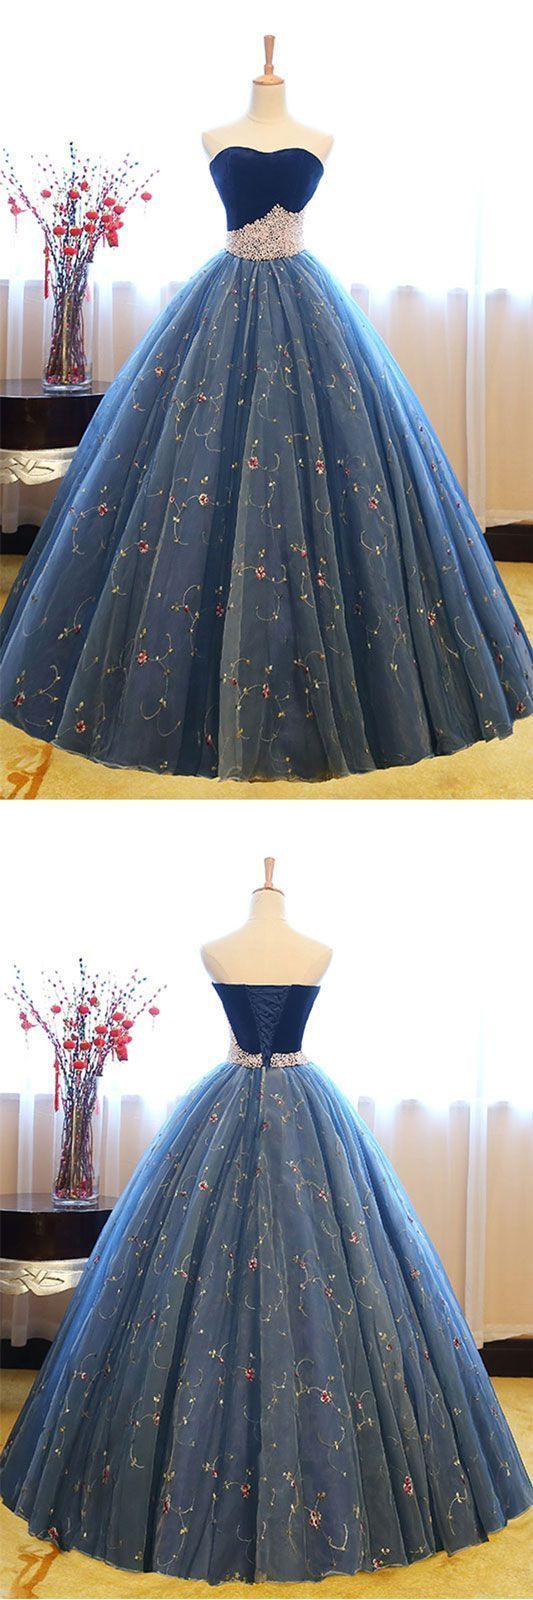 Abend Fantastisch Dunkelblaues Bodenlanges Kleid Vertrieb17 Einzigartig Dunkelblaues Bodenlanges Kleid Vertrieb